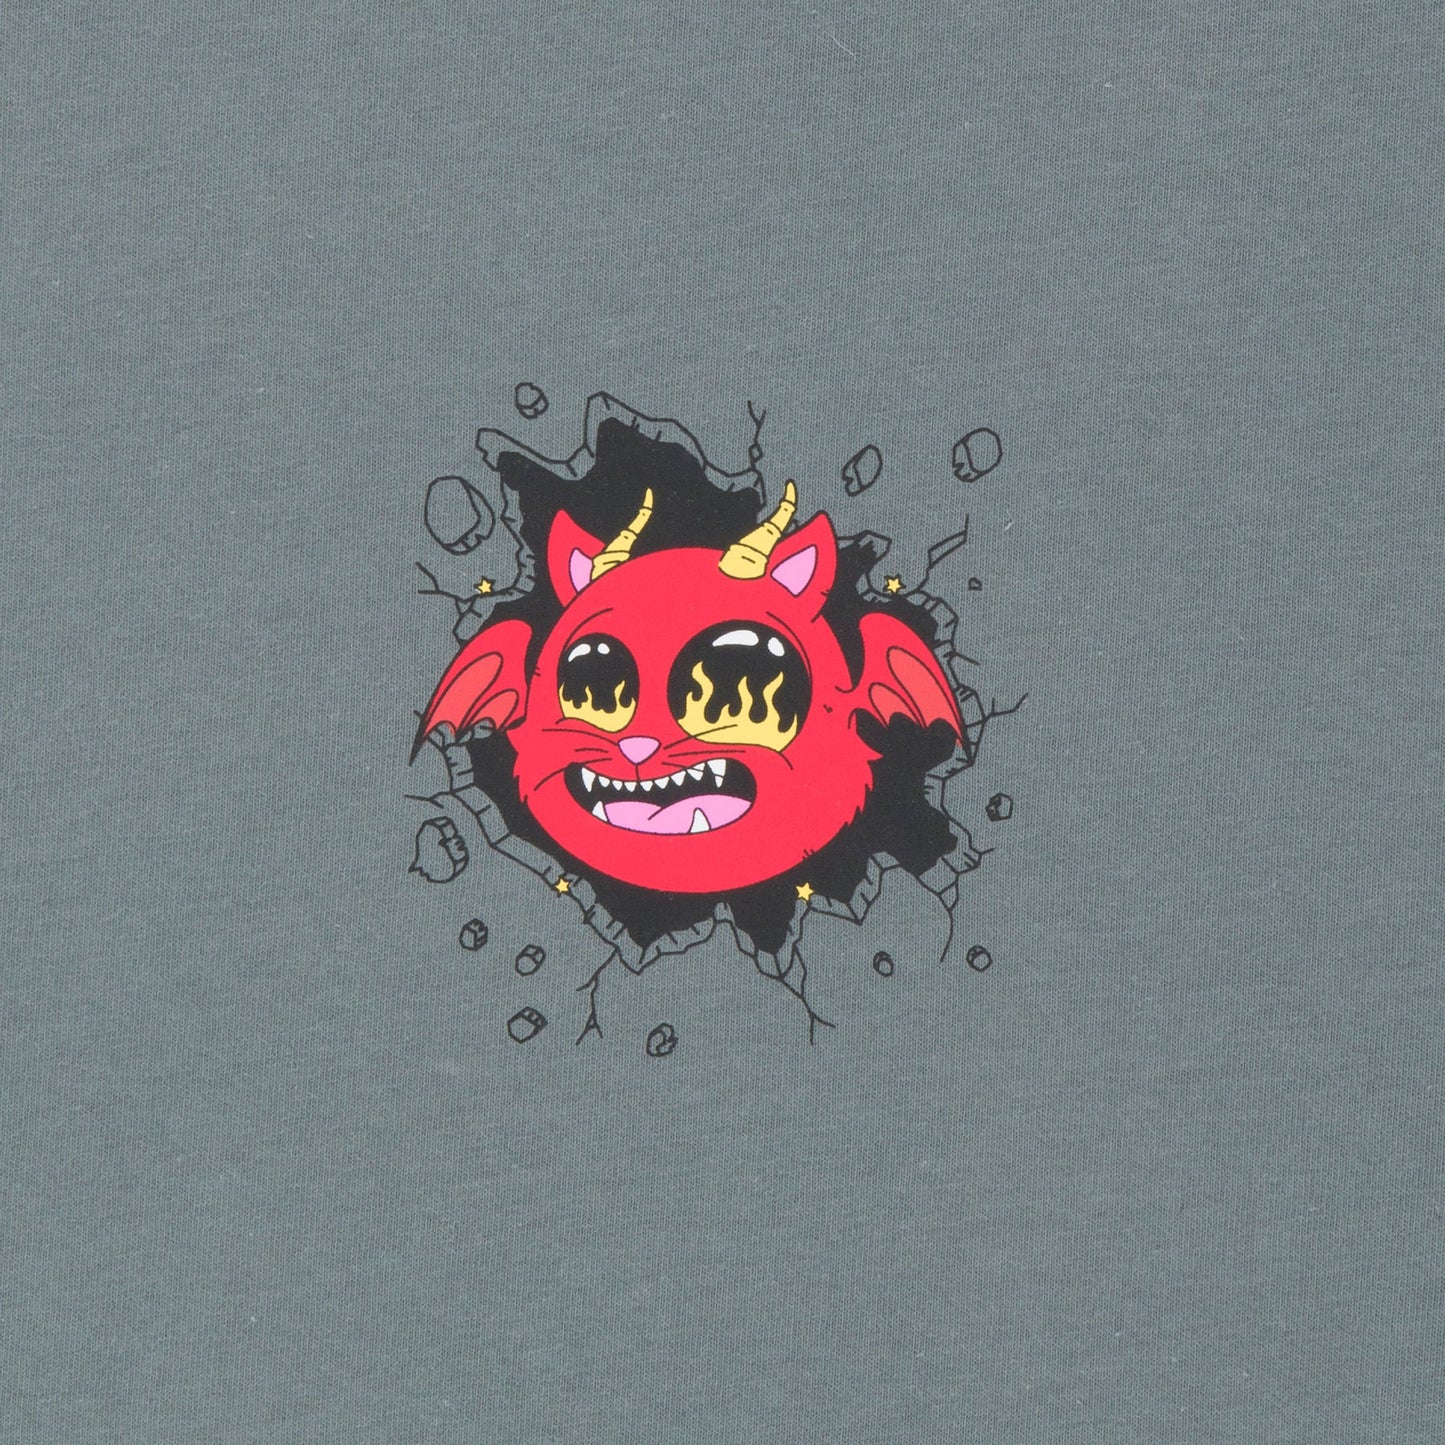 RIPNDIP Devil Monster Graphic T-shirt